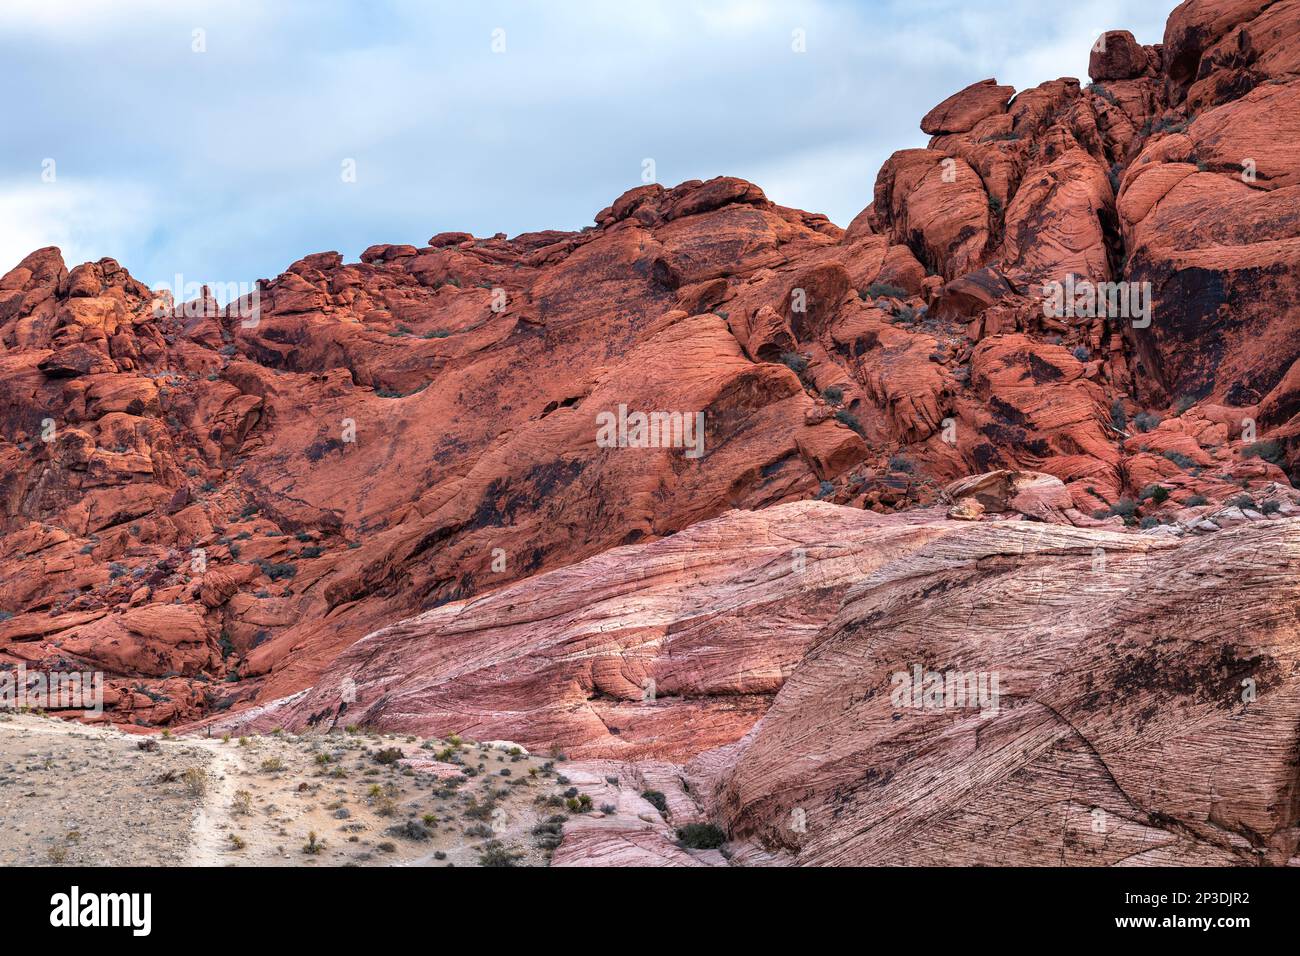 Una bella, arida, aspra e montuosa scena nella natura selvaggia del Red Rock Canyon a Las Vegas, Nevada, dove le famiglie vanno per l'avventura. Foto Stock